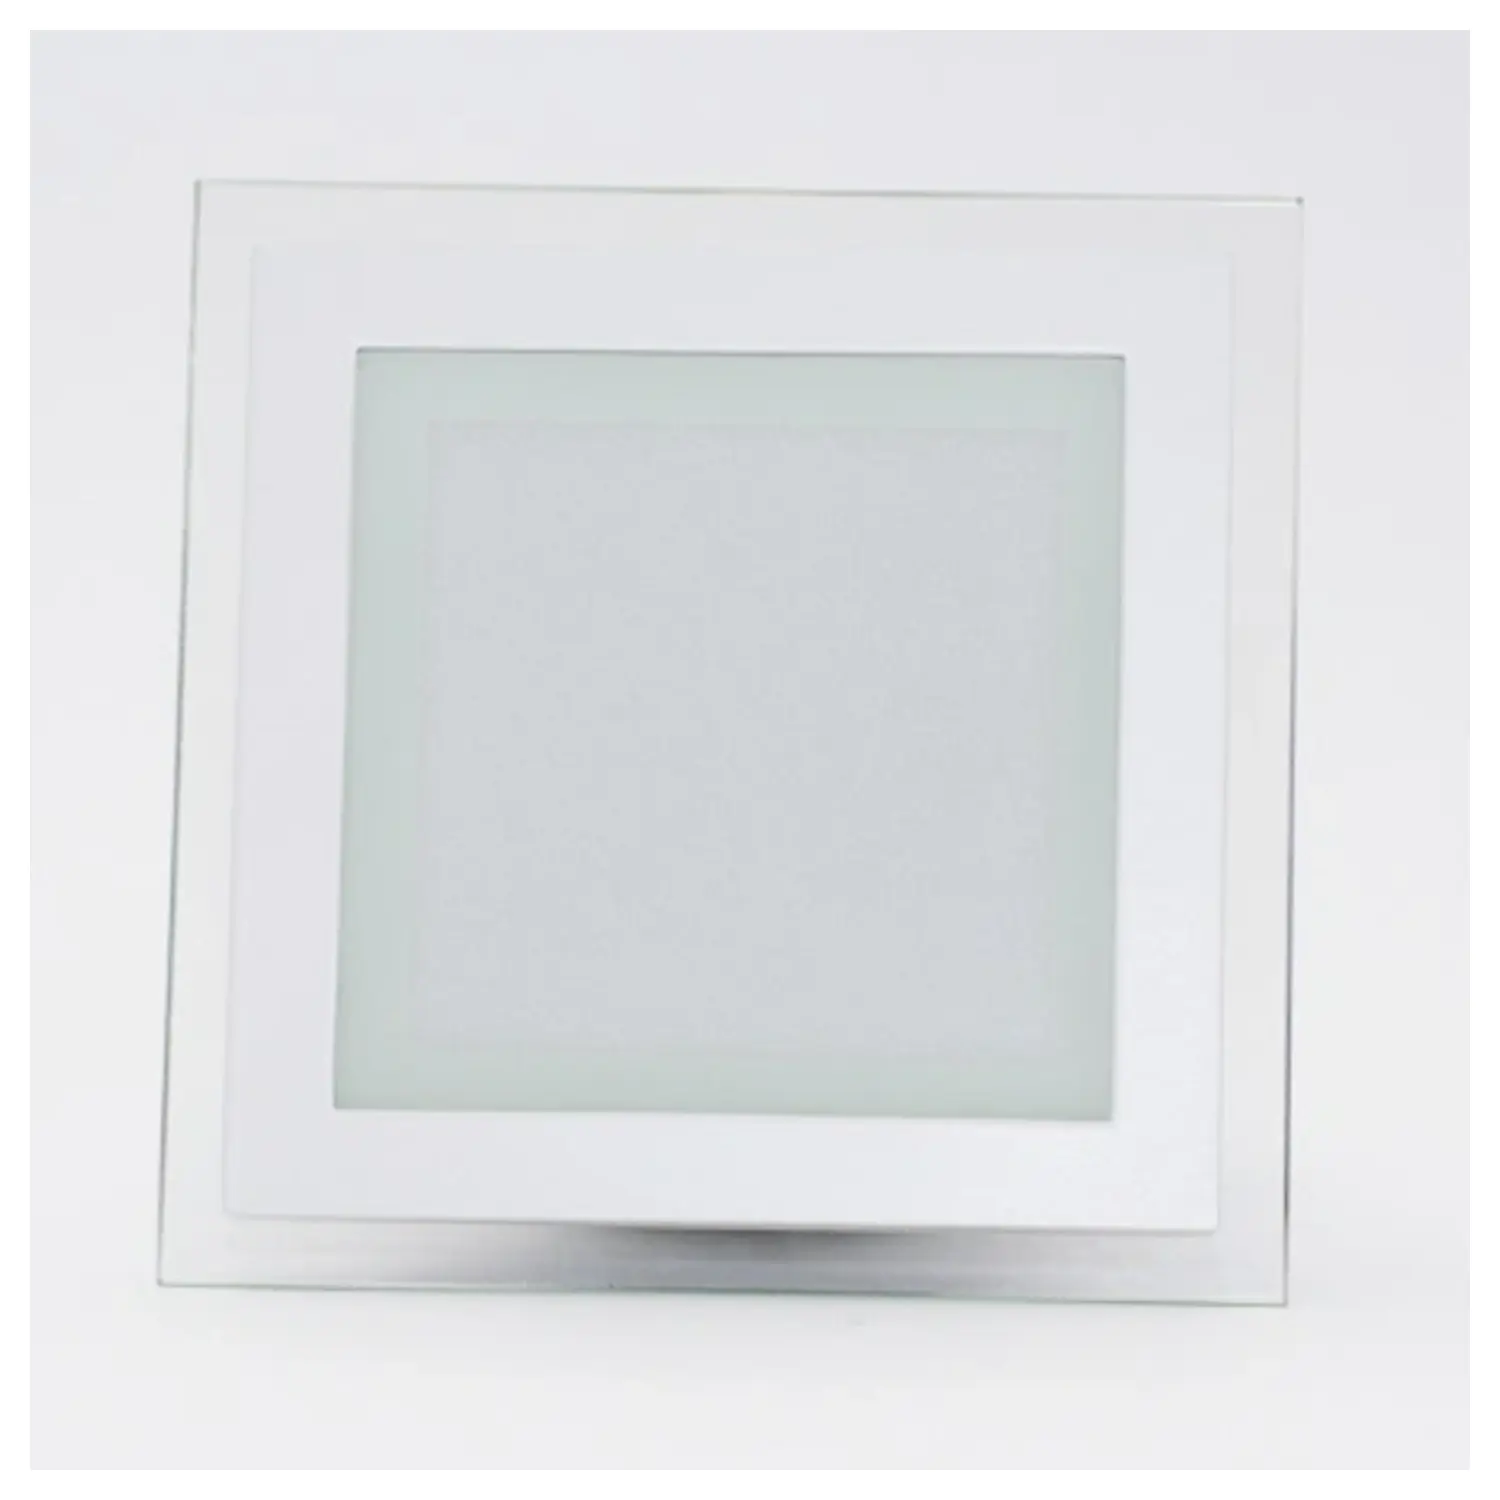 immagine del prodotto mini pannel incasso cornice vetro quadrato IP20 fisso CE bianco caldo bianco 6 watt 220-240 volt 120° tec 622877